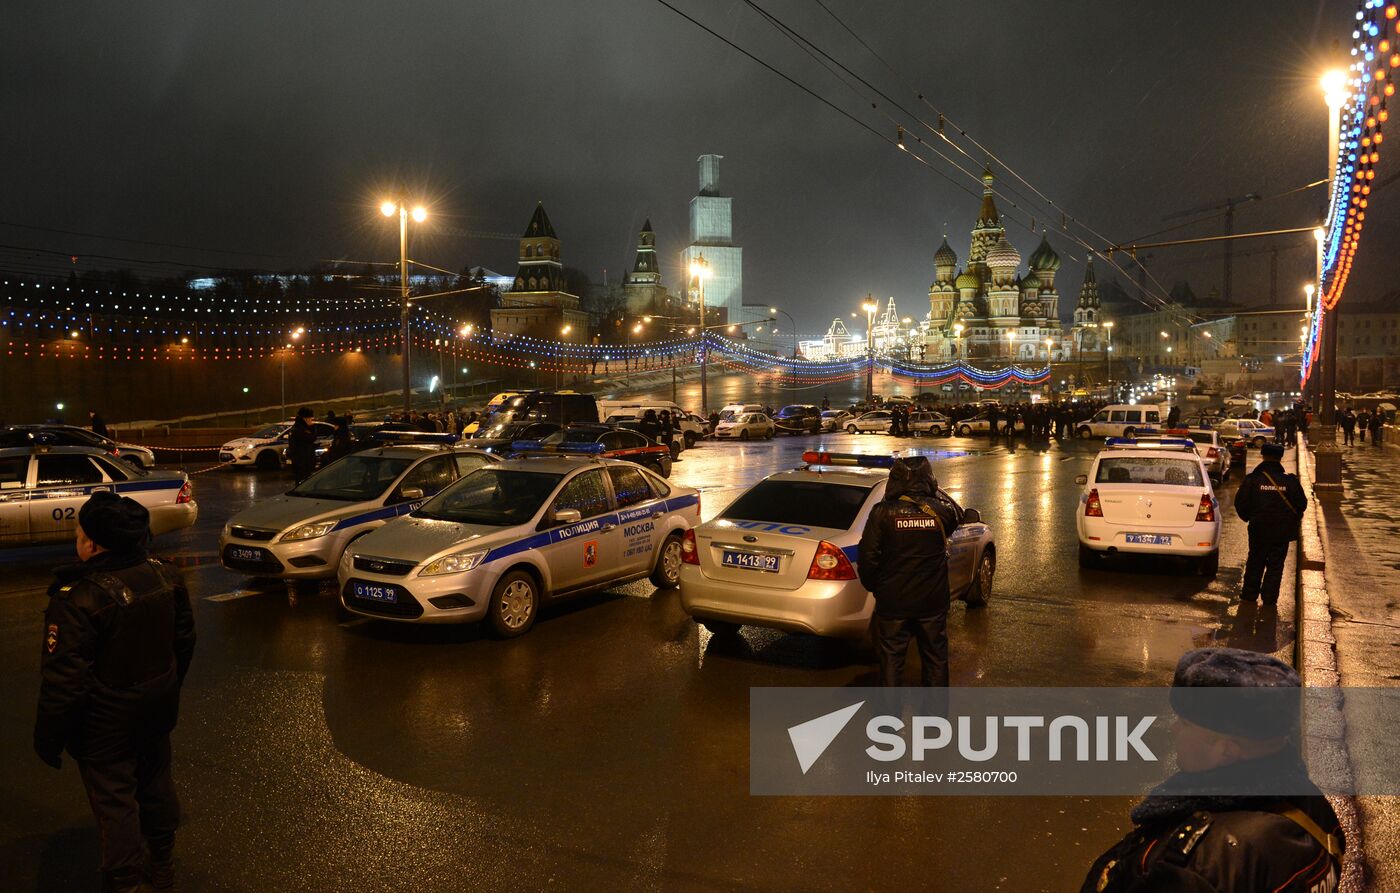 Boris Nemtsov shot dead in central Moscow